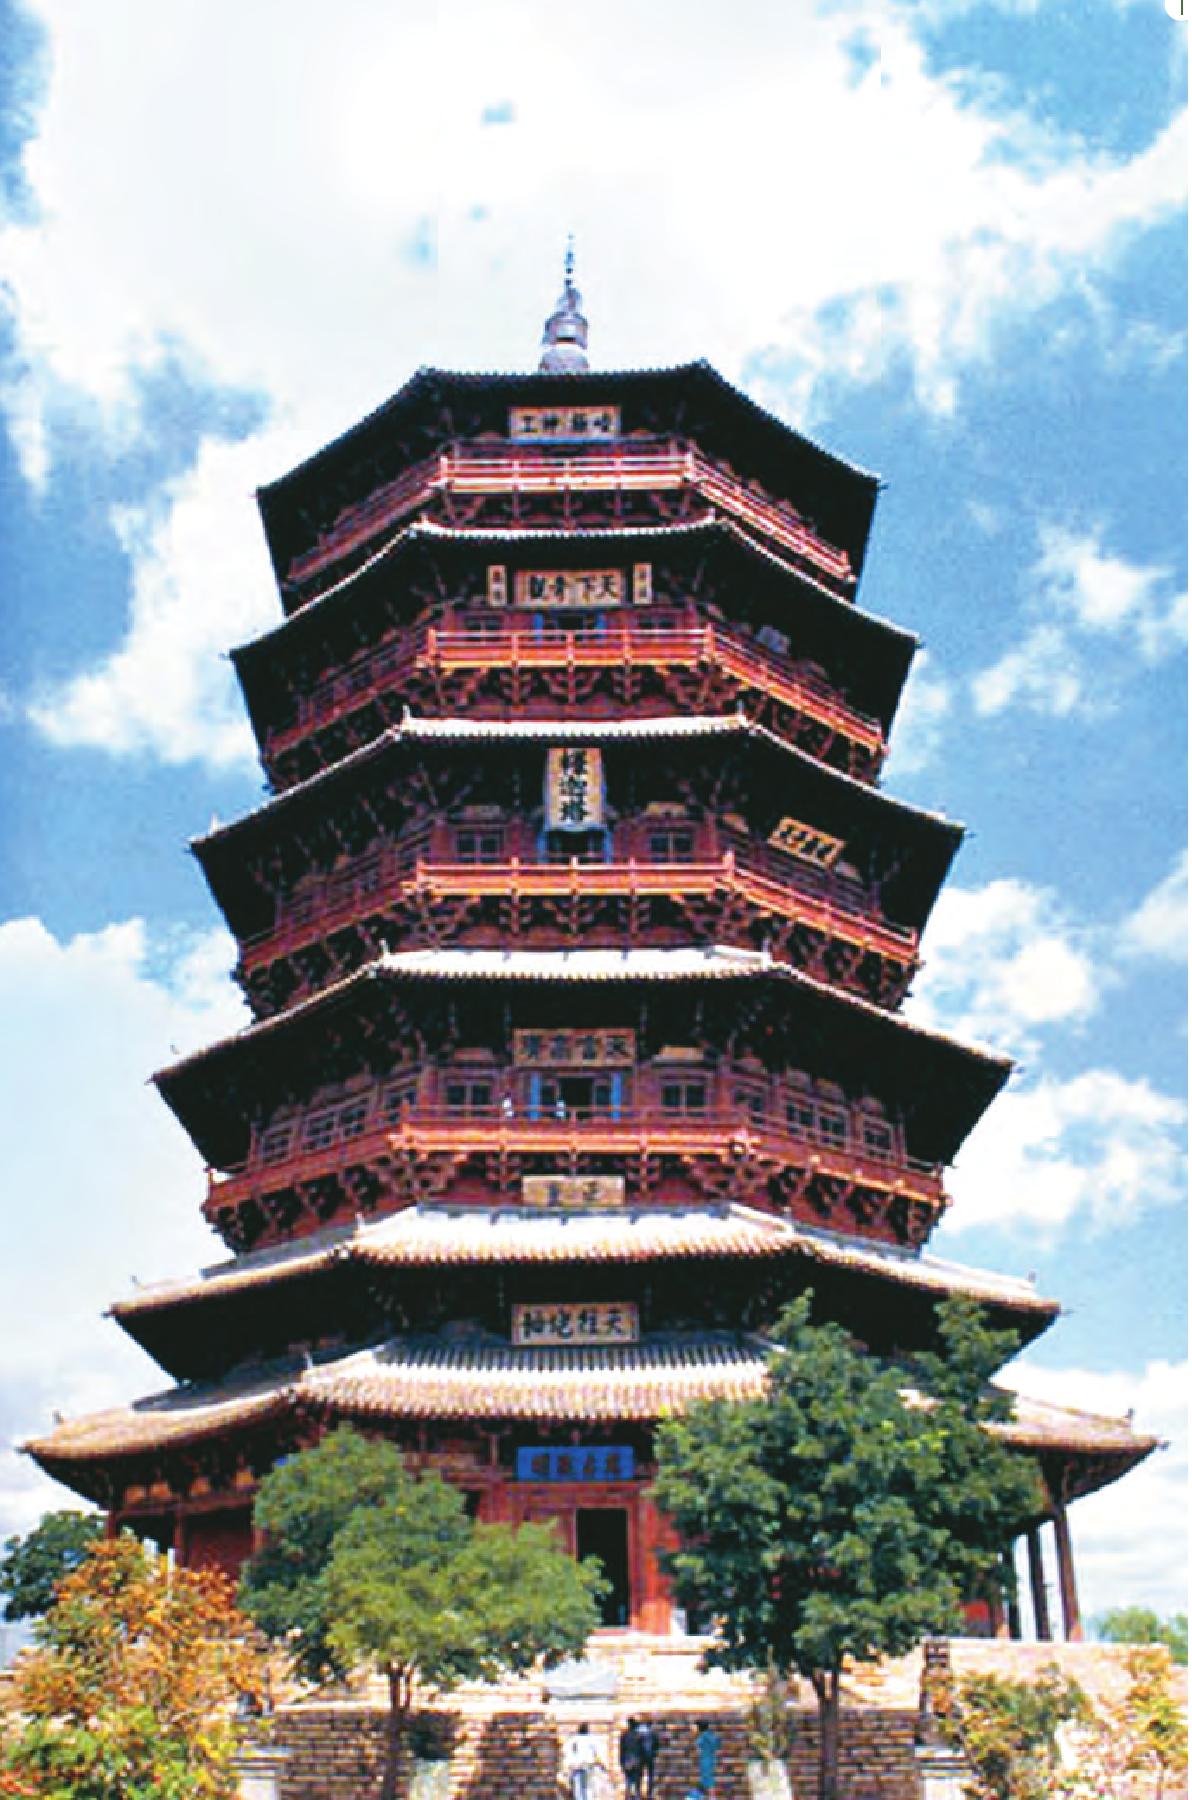 佛宫寺释迦塔——中国现存最古老、最高大的木构佛塔